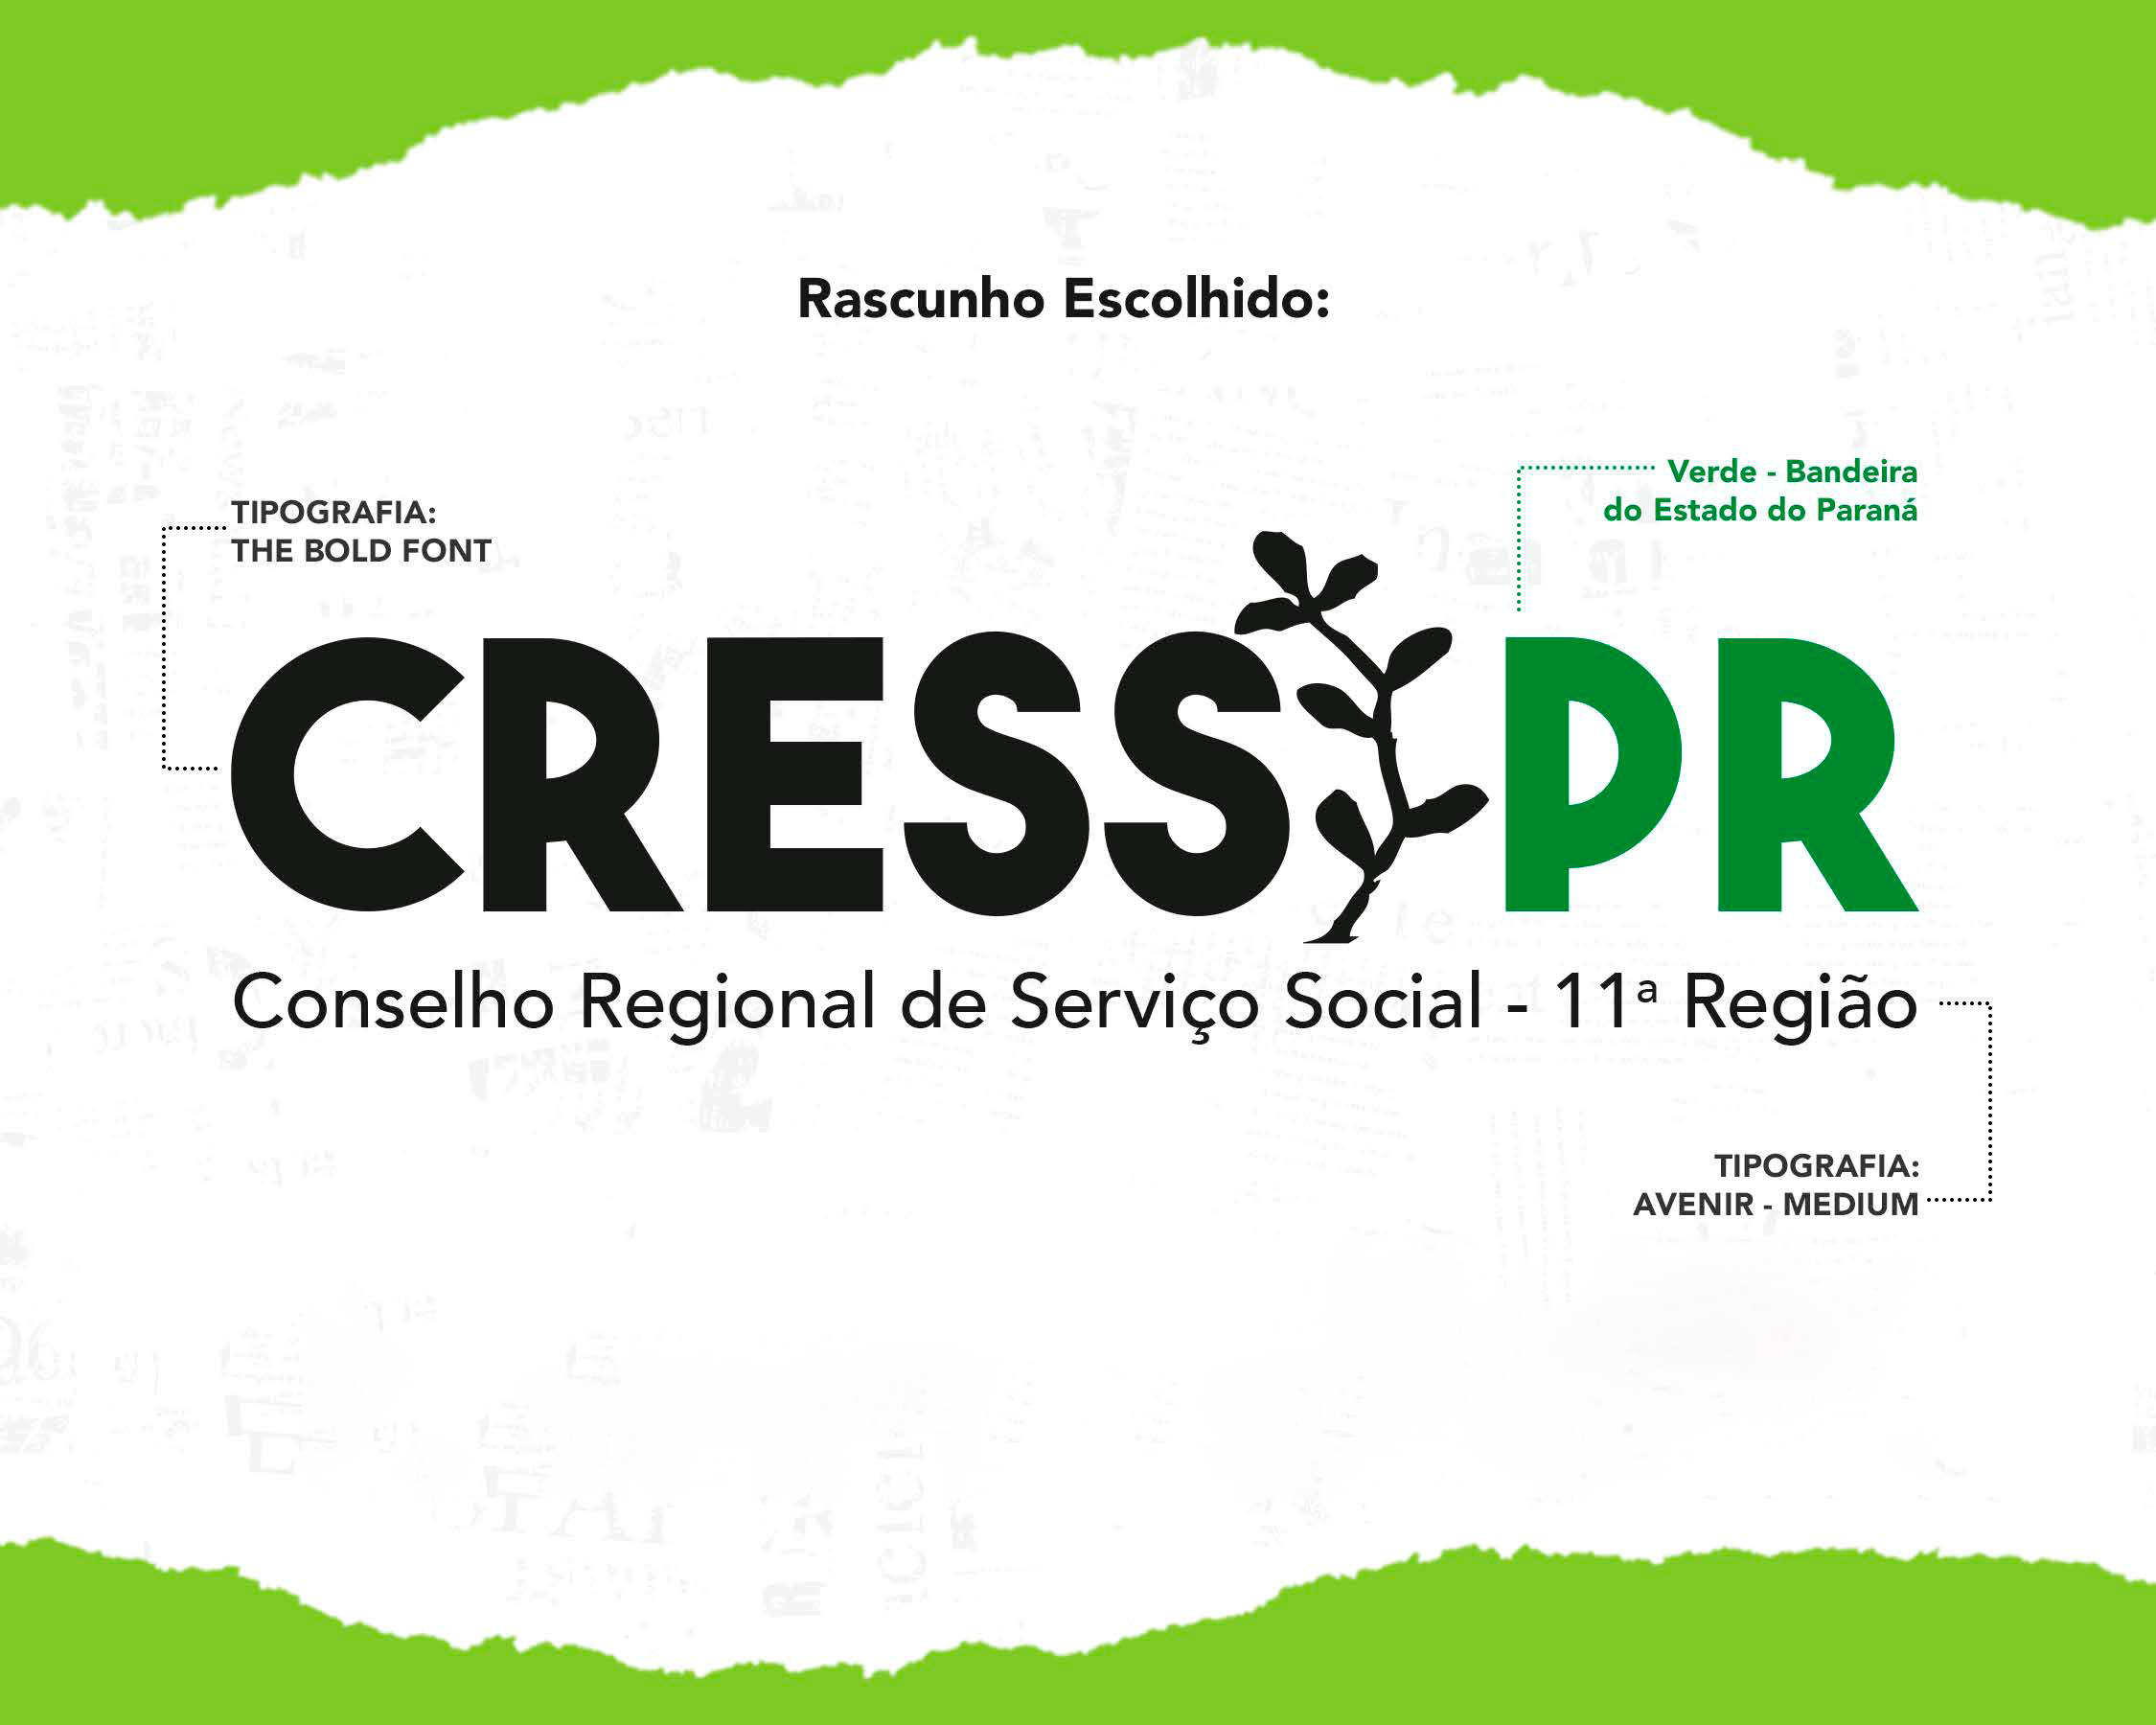 CRESS-PR participa da mobilização contra a aprovação do PL 3.418